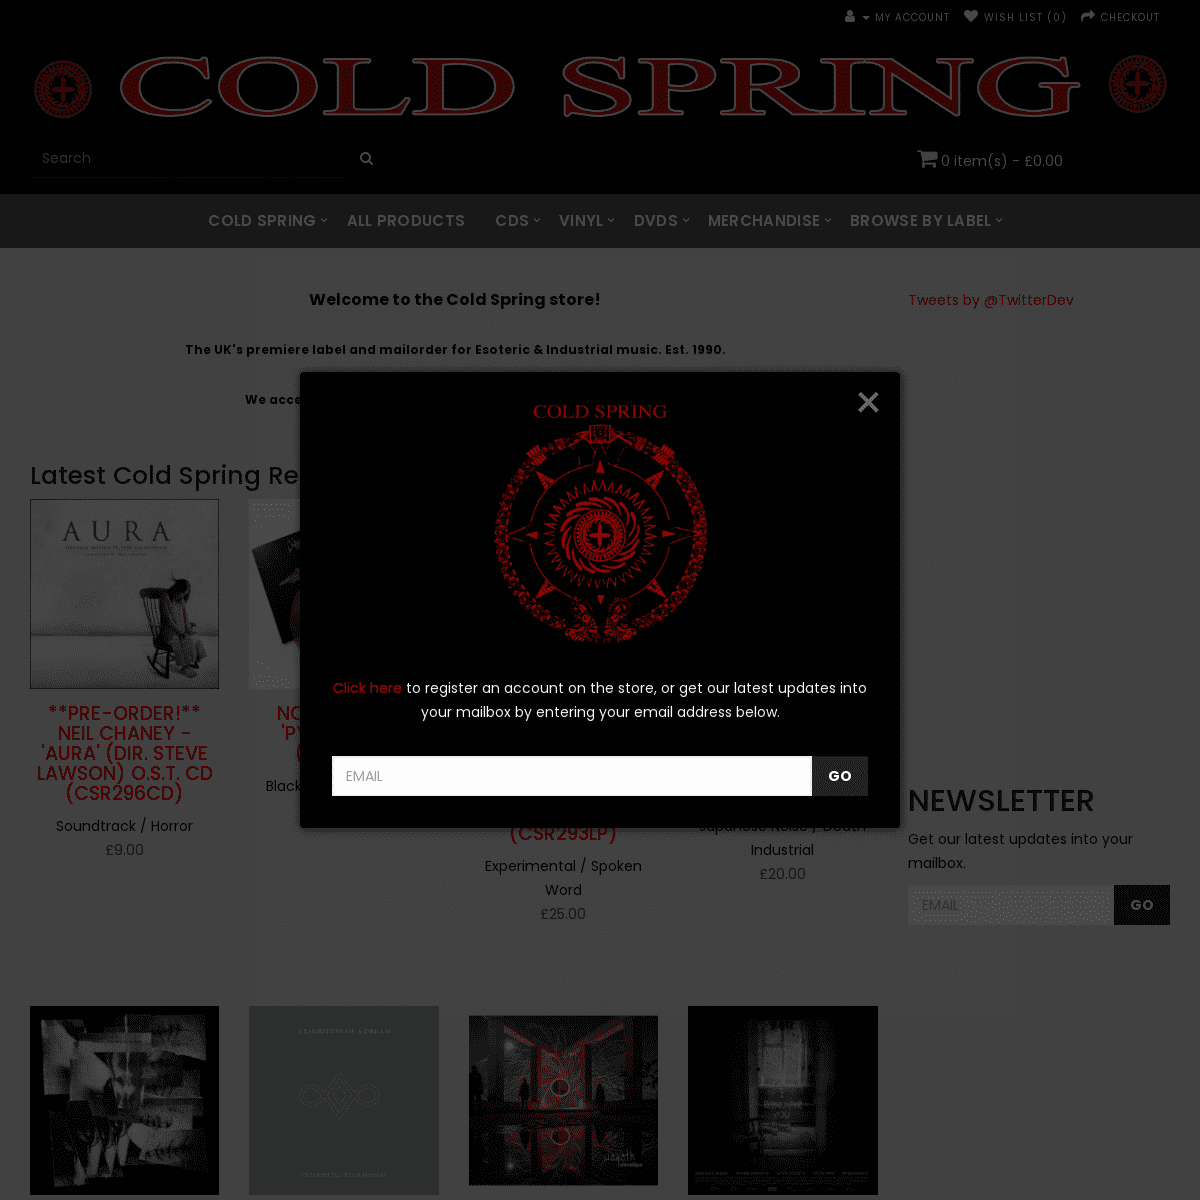 A complete backup of https://coldspring.co.uk